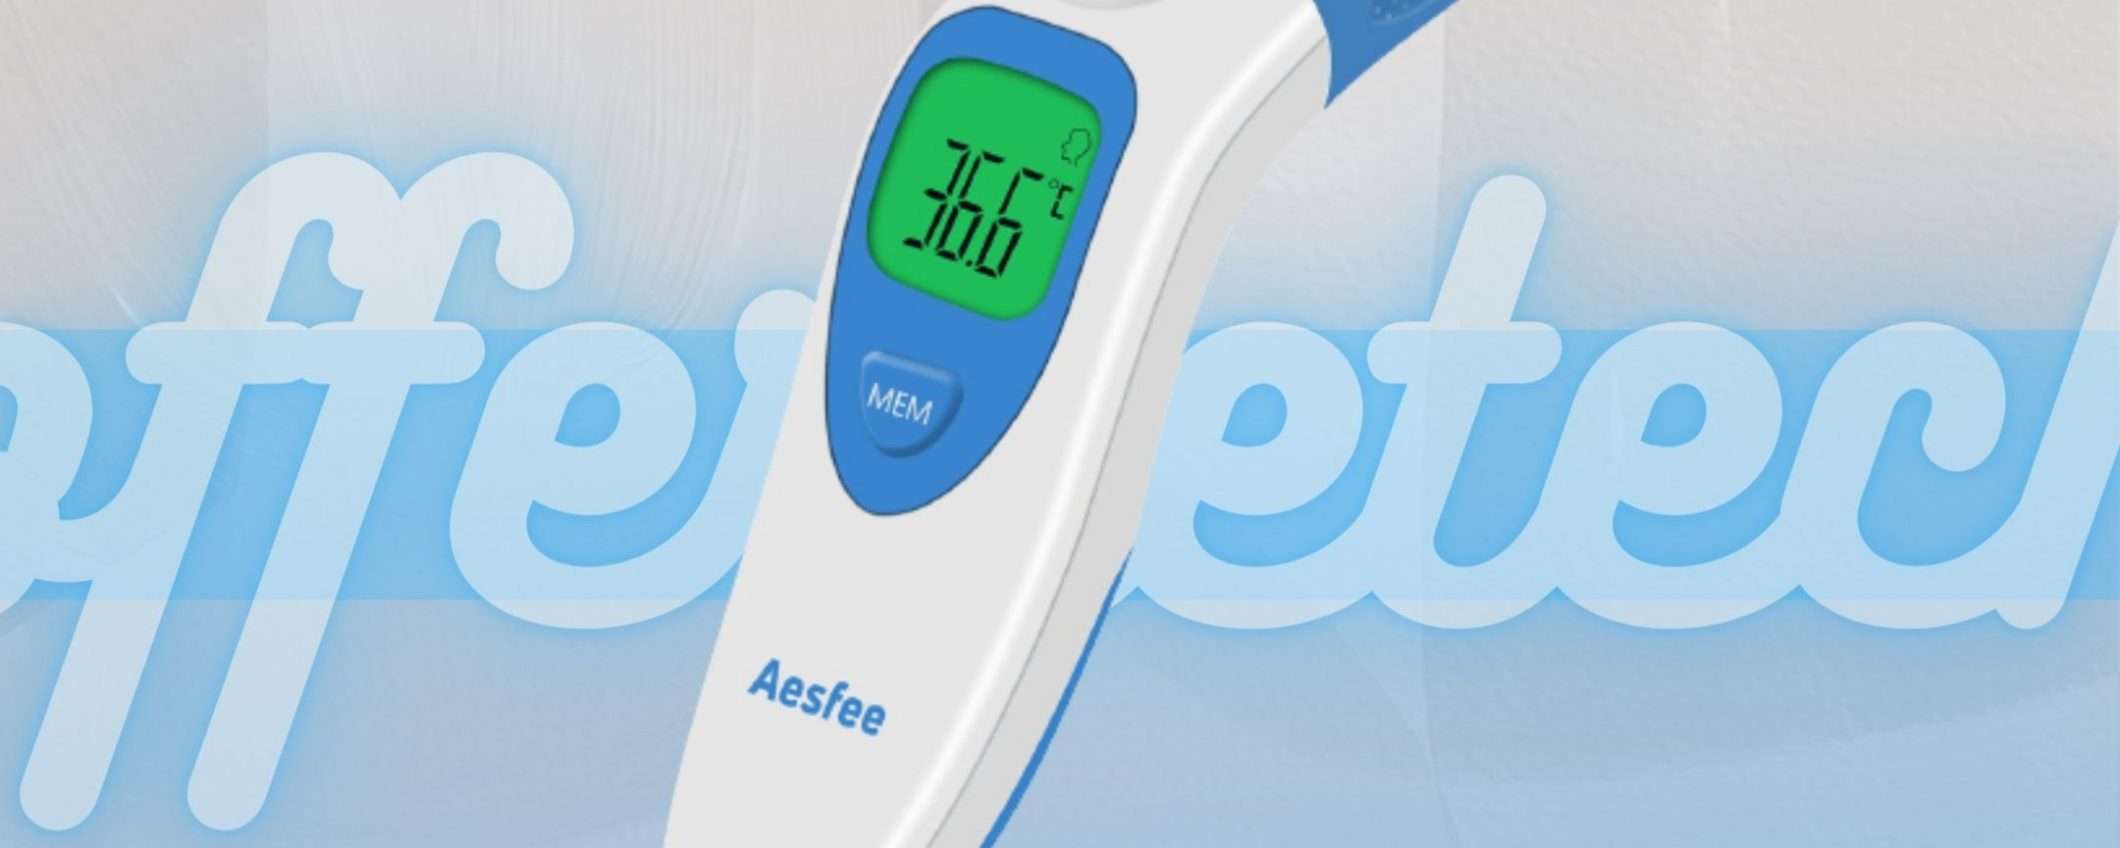 Termometro a infrarossi: l'offerta lampo te lo fa acquistare a 11€